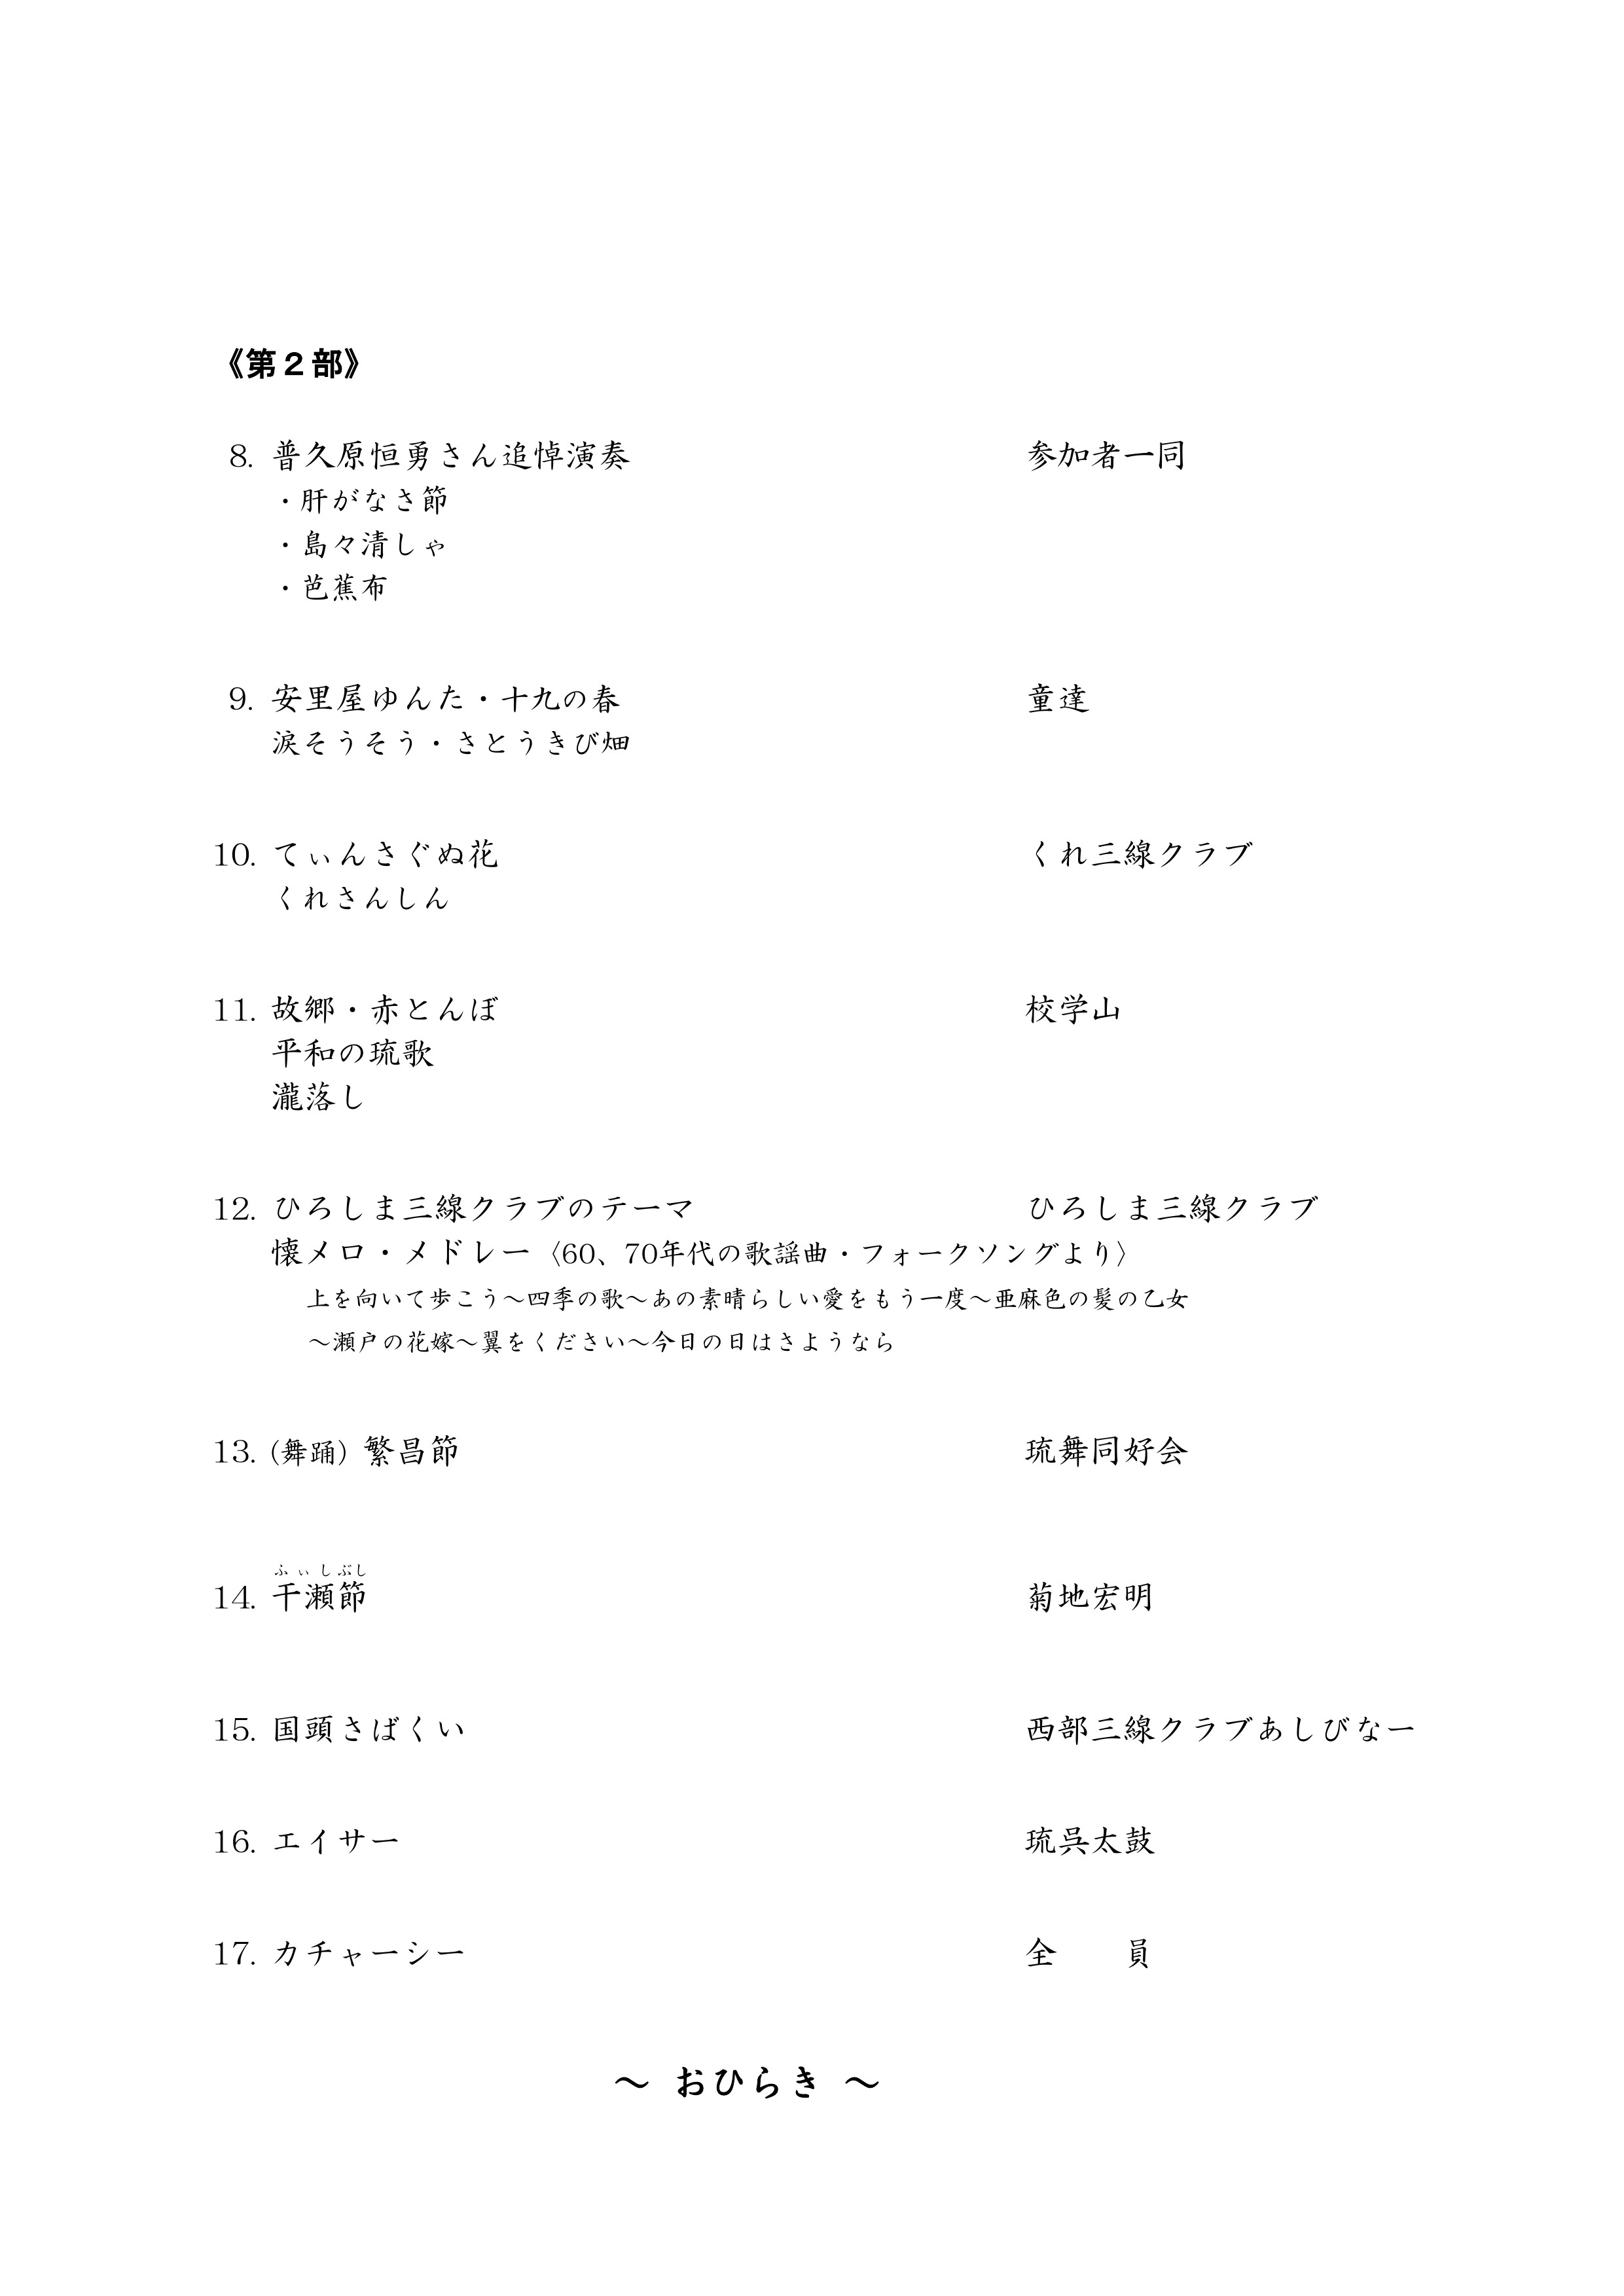 「ひろしま三線クラブ28周年記念コンサート」プログラム_PAGE0002